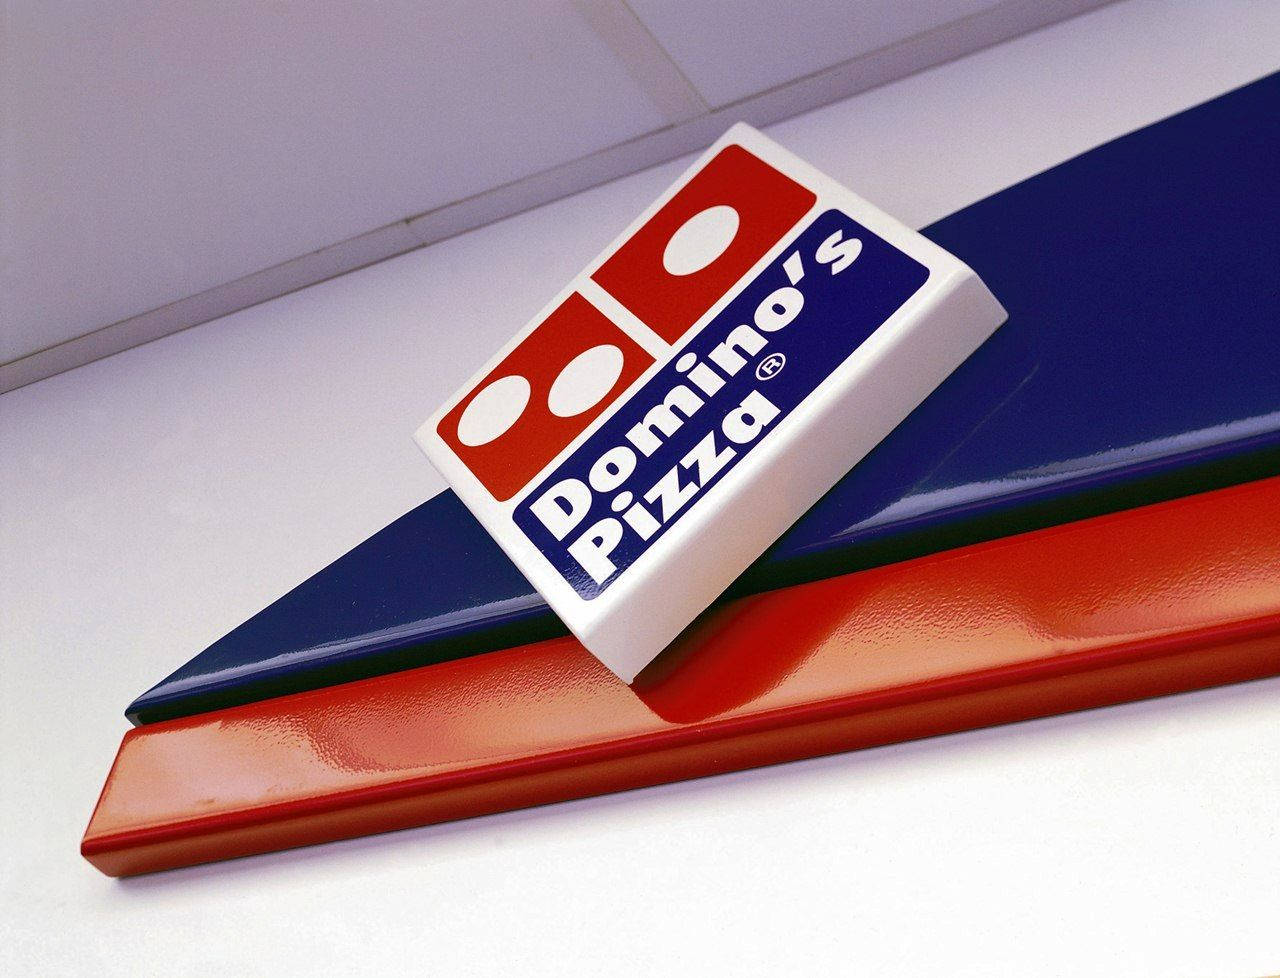 Dominos Pizza Diagonal Logo Tapet: Et design af Dominos Pizza-logo i en diagonalt layout. Wallpaper